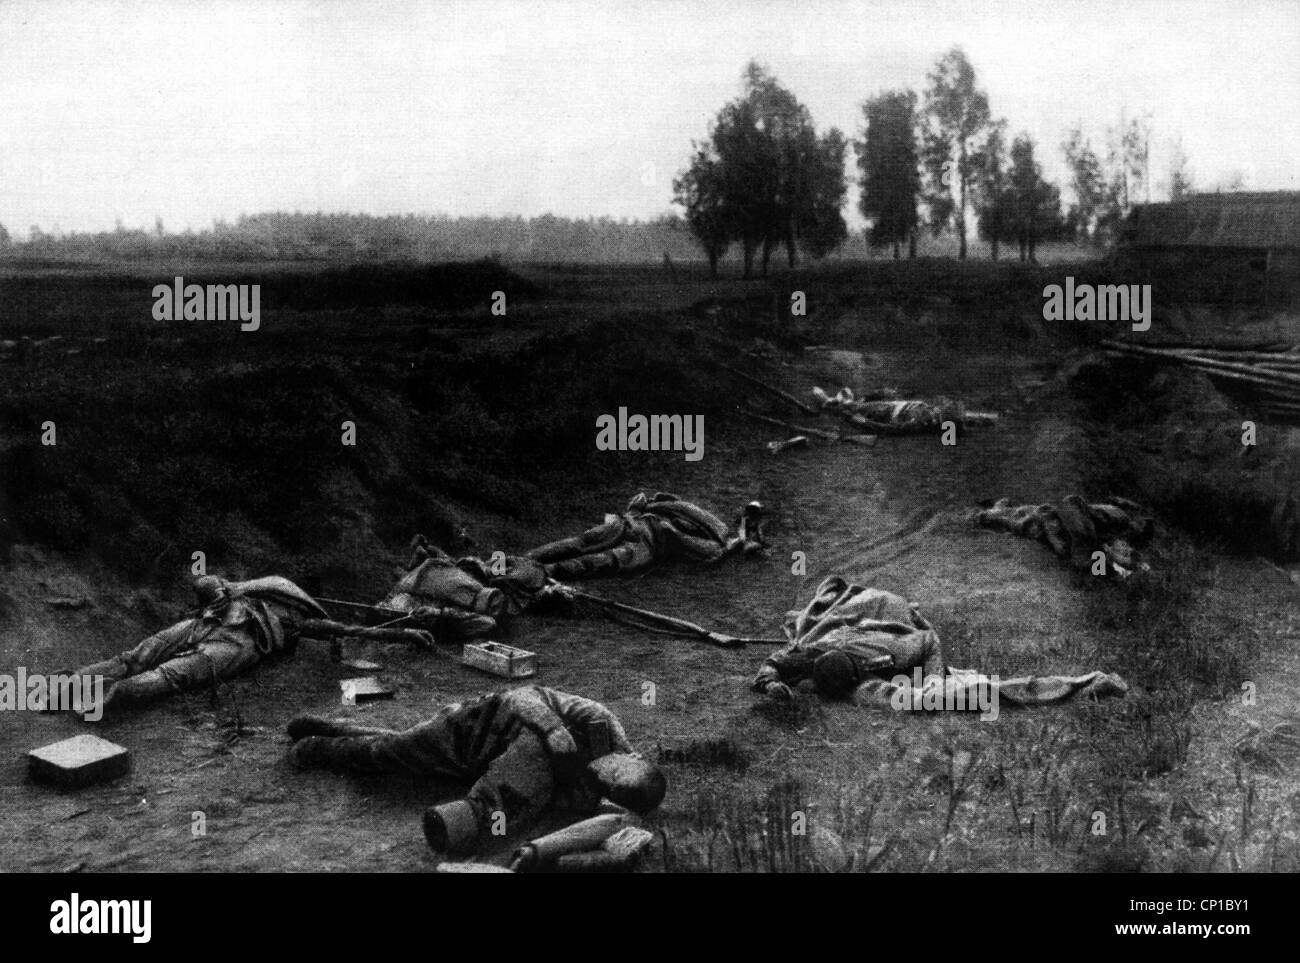 Evénements, première Guerre mondiale / première Guerre mondiale, Front de l'est, soldats russes morts près de Riga, Lettonie, 4.9.1917, droits supplémentaires-Clearences-non disponible Banque D'Images